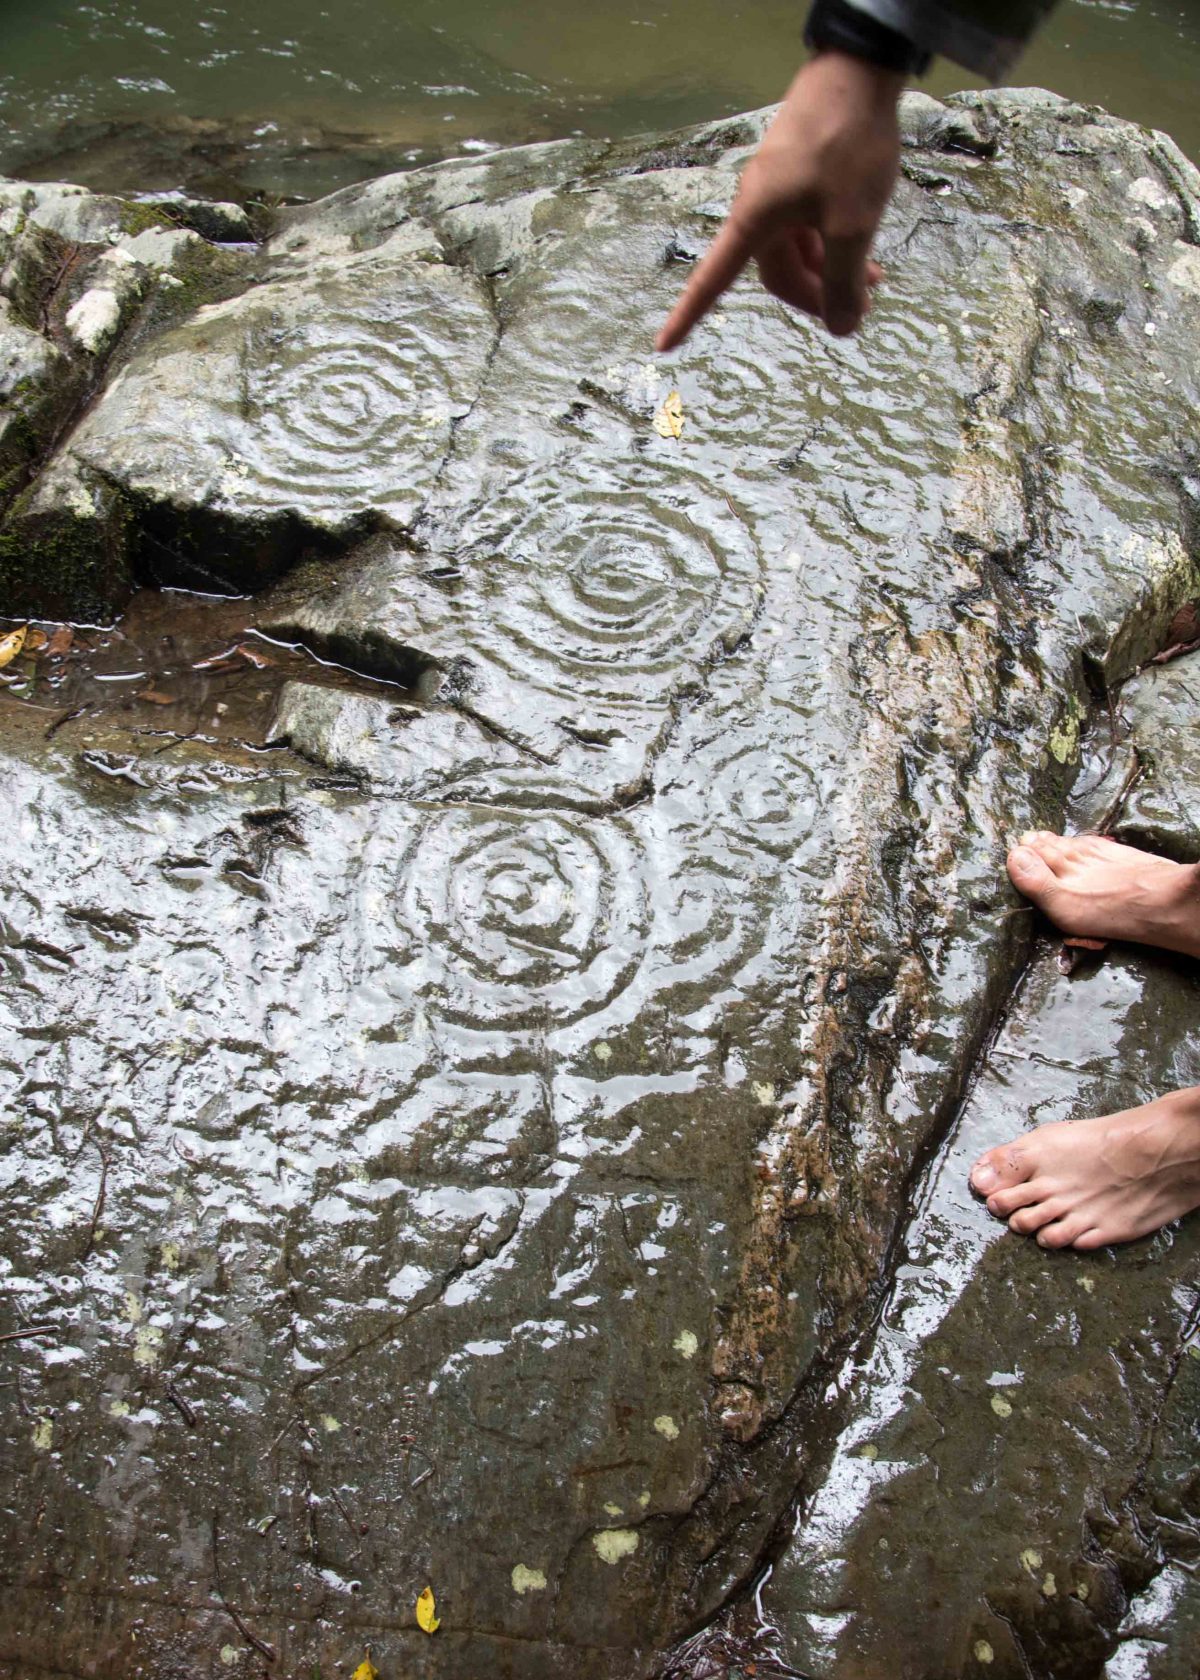 Petroglyphs along the Rio Chiripe, Pacto, Ecuador